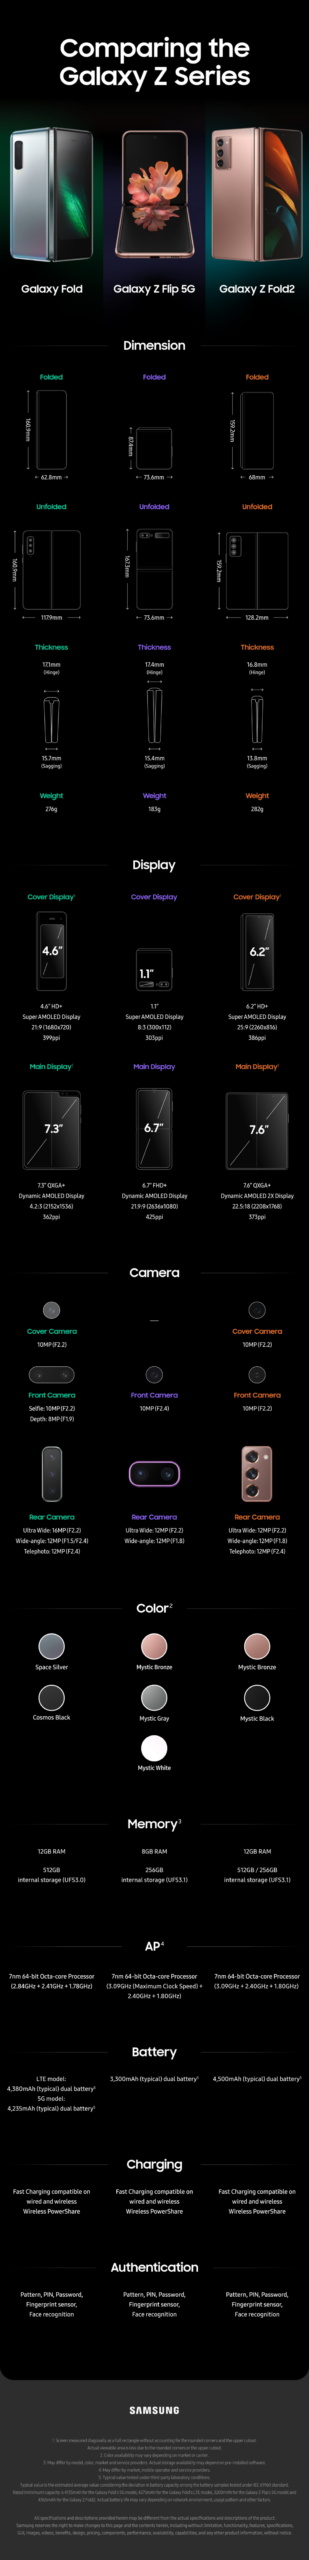 От Galaxy Fold и Galaxy Z Flip 5G до Galaxy Z Fold2. Эволюция сгибающихся телефонов Samsung [Инфографика]